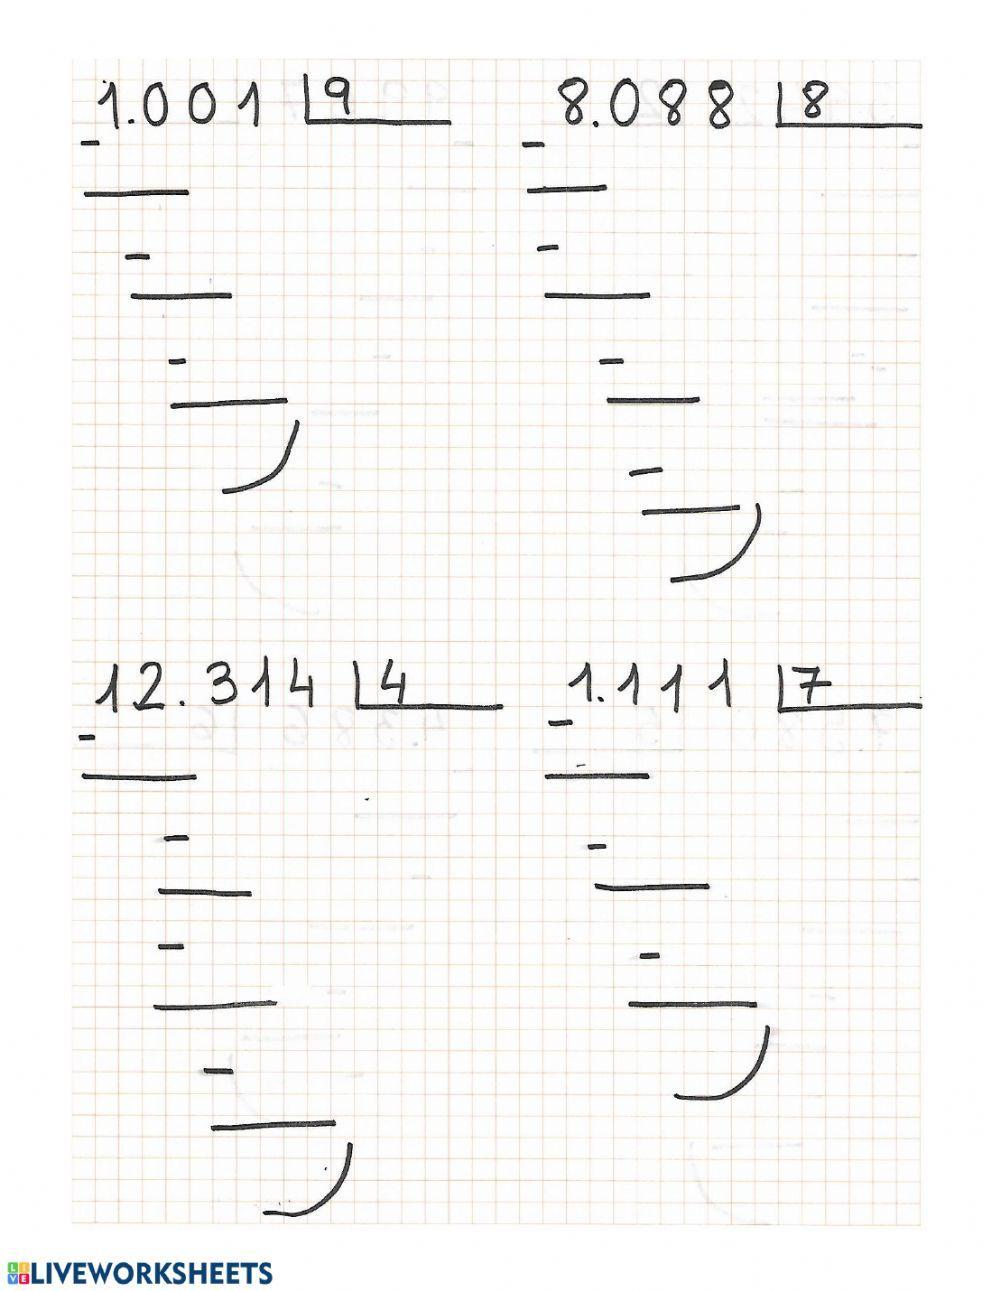 Practiquem les divisions d'una xifra (2)